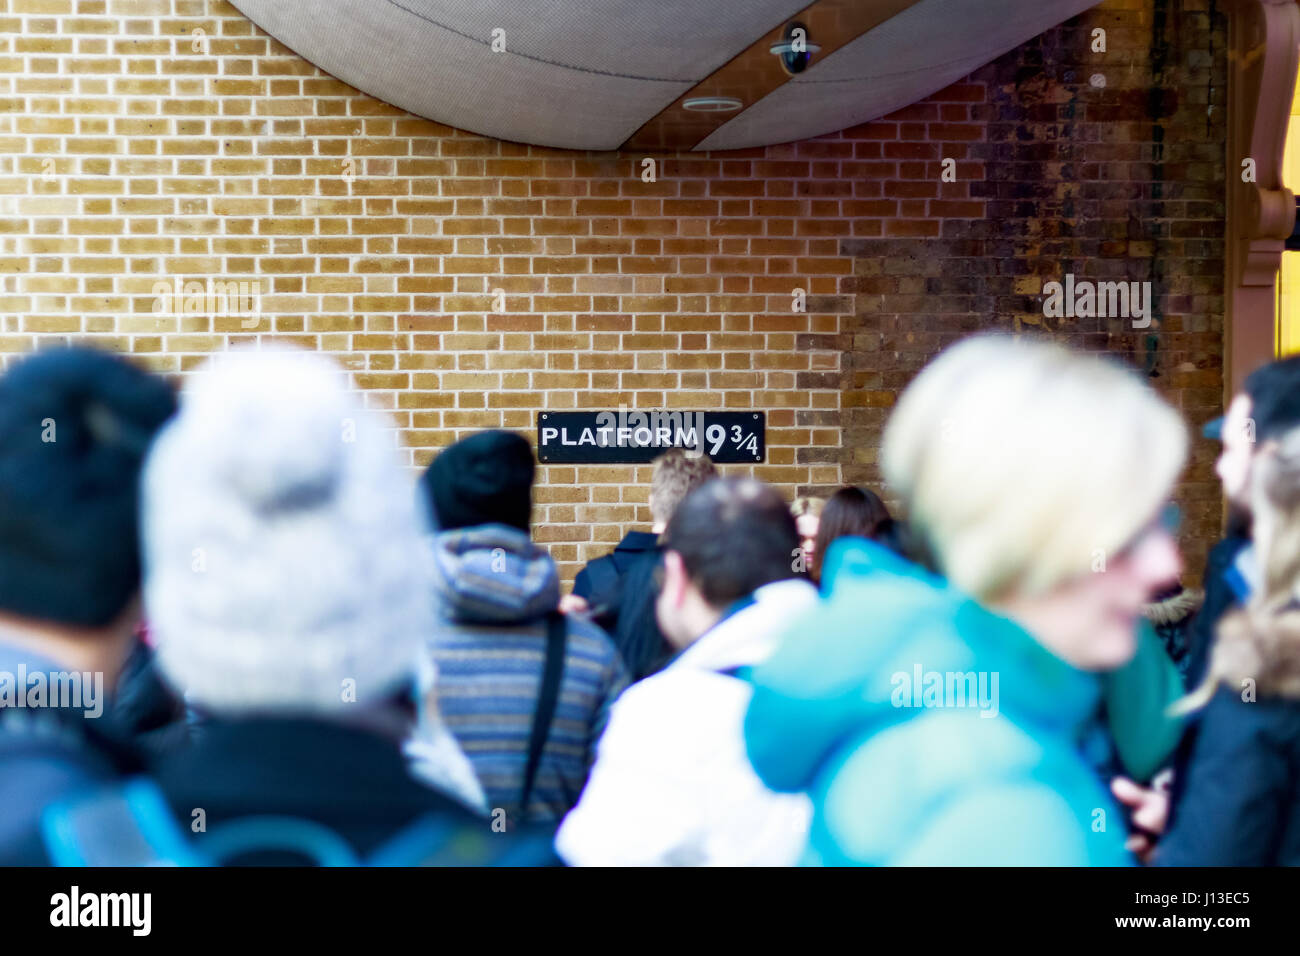 Londres, Royaume-Uni - 28 février 2017 - La plate-forme 9 3/4 de Harry Potter à King's Cross station vu à travers la foule d'attente Banque D'Images